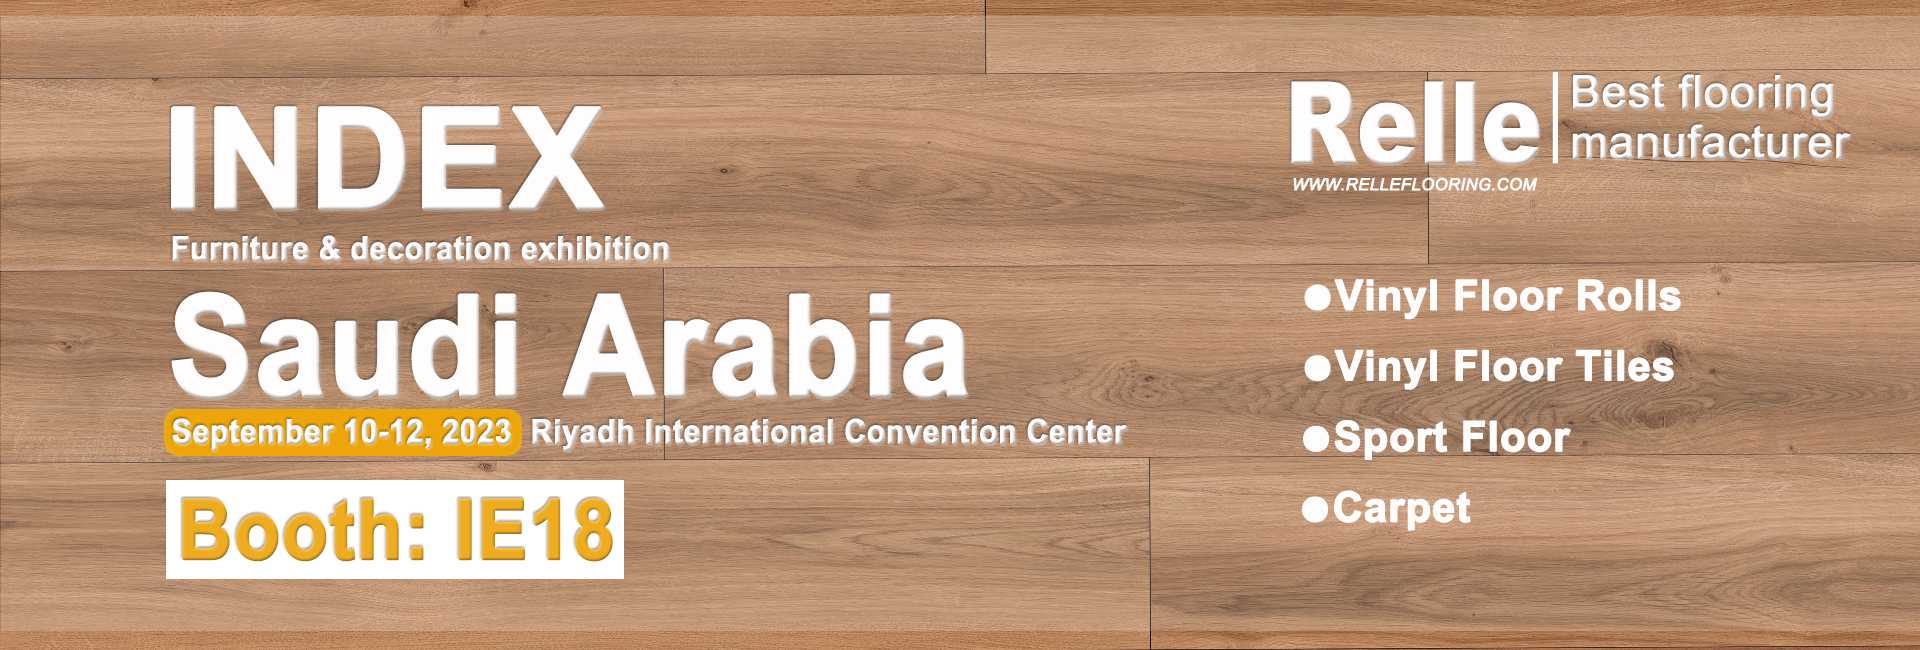 Welcome to Saudi Arabia INDEXF Exhibition